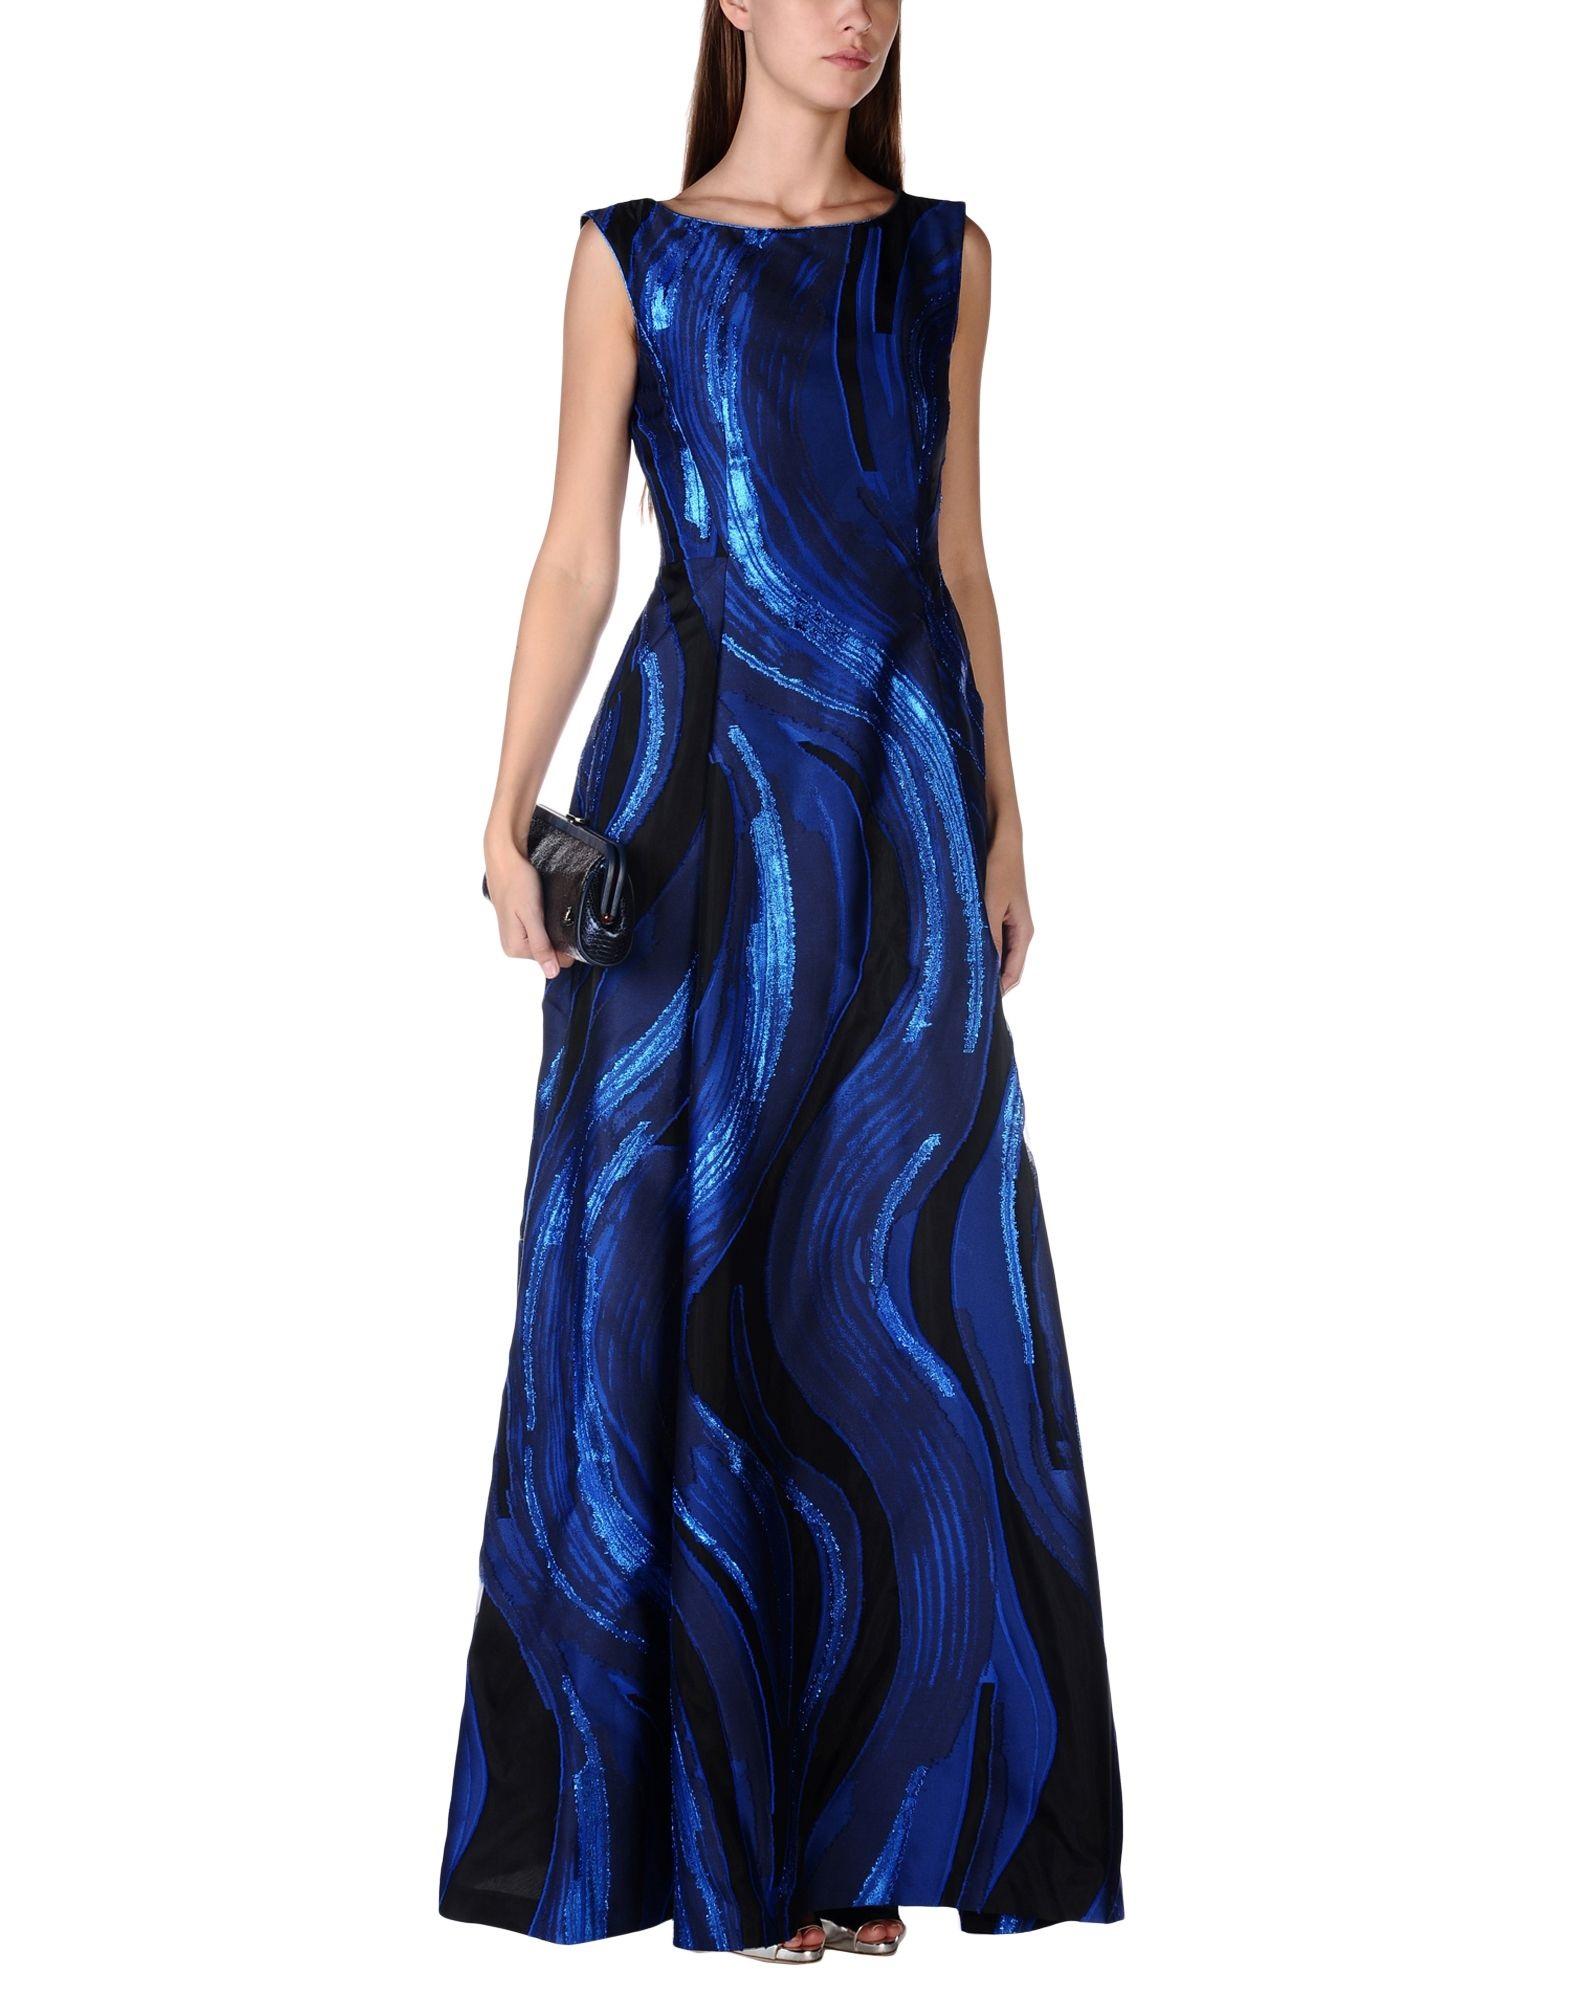 Neu Alberta Ferretti Jacquard ausgestelltes langes Kleid Kleid
Designer Größe 40 - US 4
Schwarz und Blau mit Metallic-Fäden, Jacquard, plissiert, zwei tiefe Seitentaschen, vollständig gefüttert, ausgestellter Saum, Reißverschluss hinten, nicht